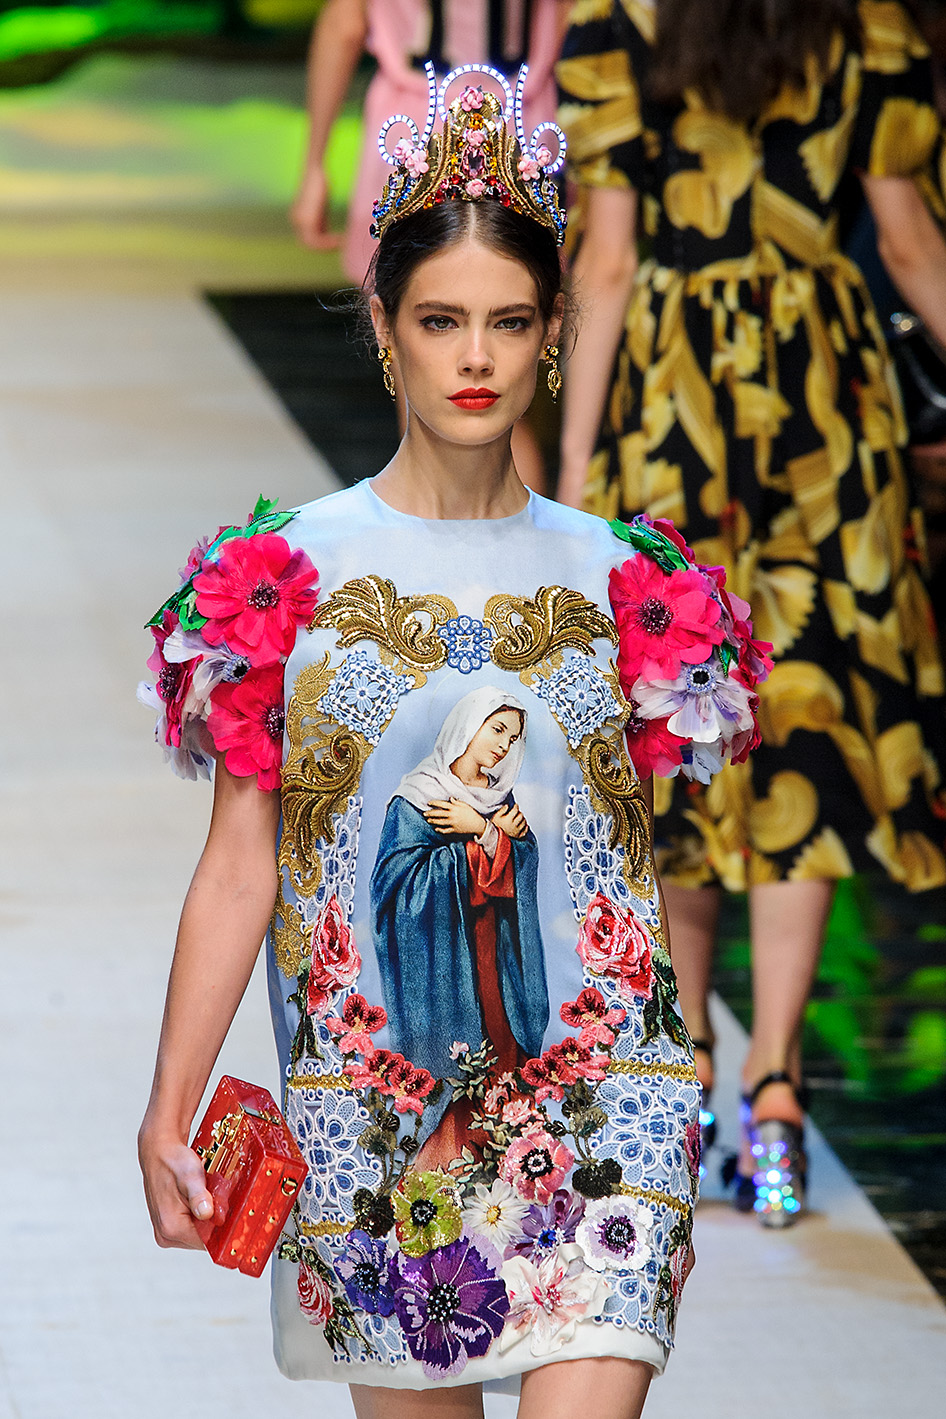 Milan Fashion Week SS17 Dolce Gabbana show